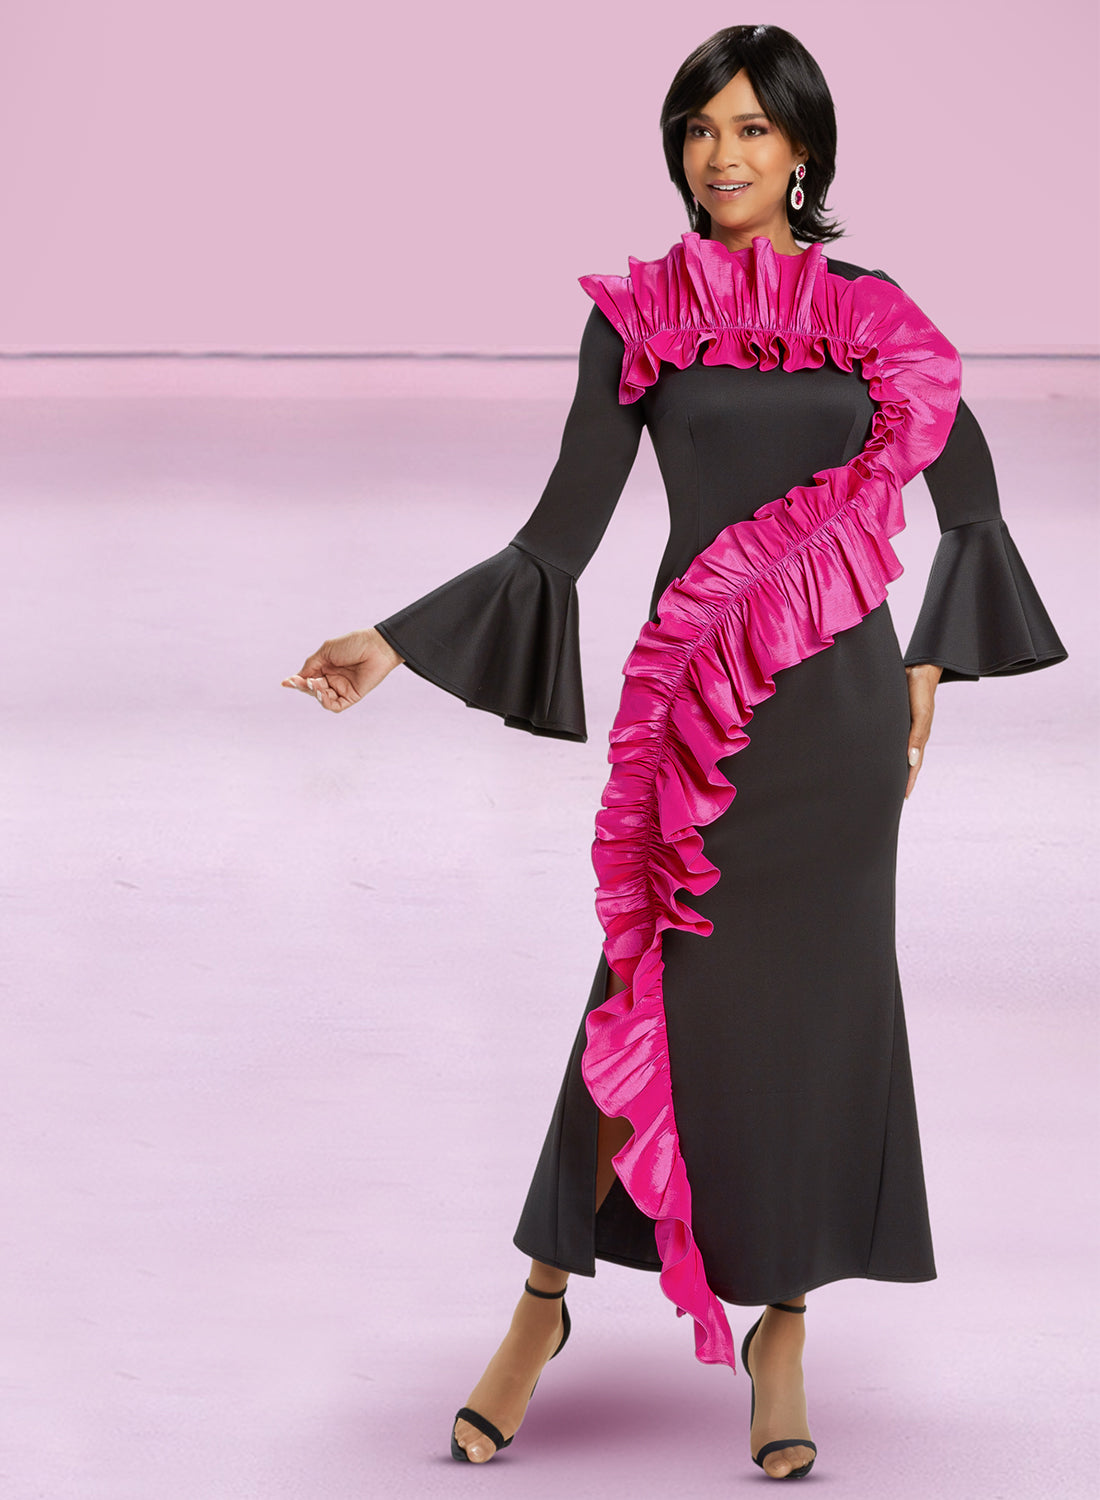 Donna Vinci 12001 - 1 PC High Quality Stretch Scuba Fabric Dress With Taffeta Trim